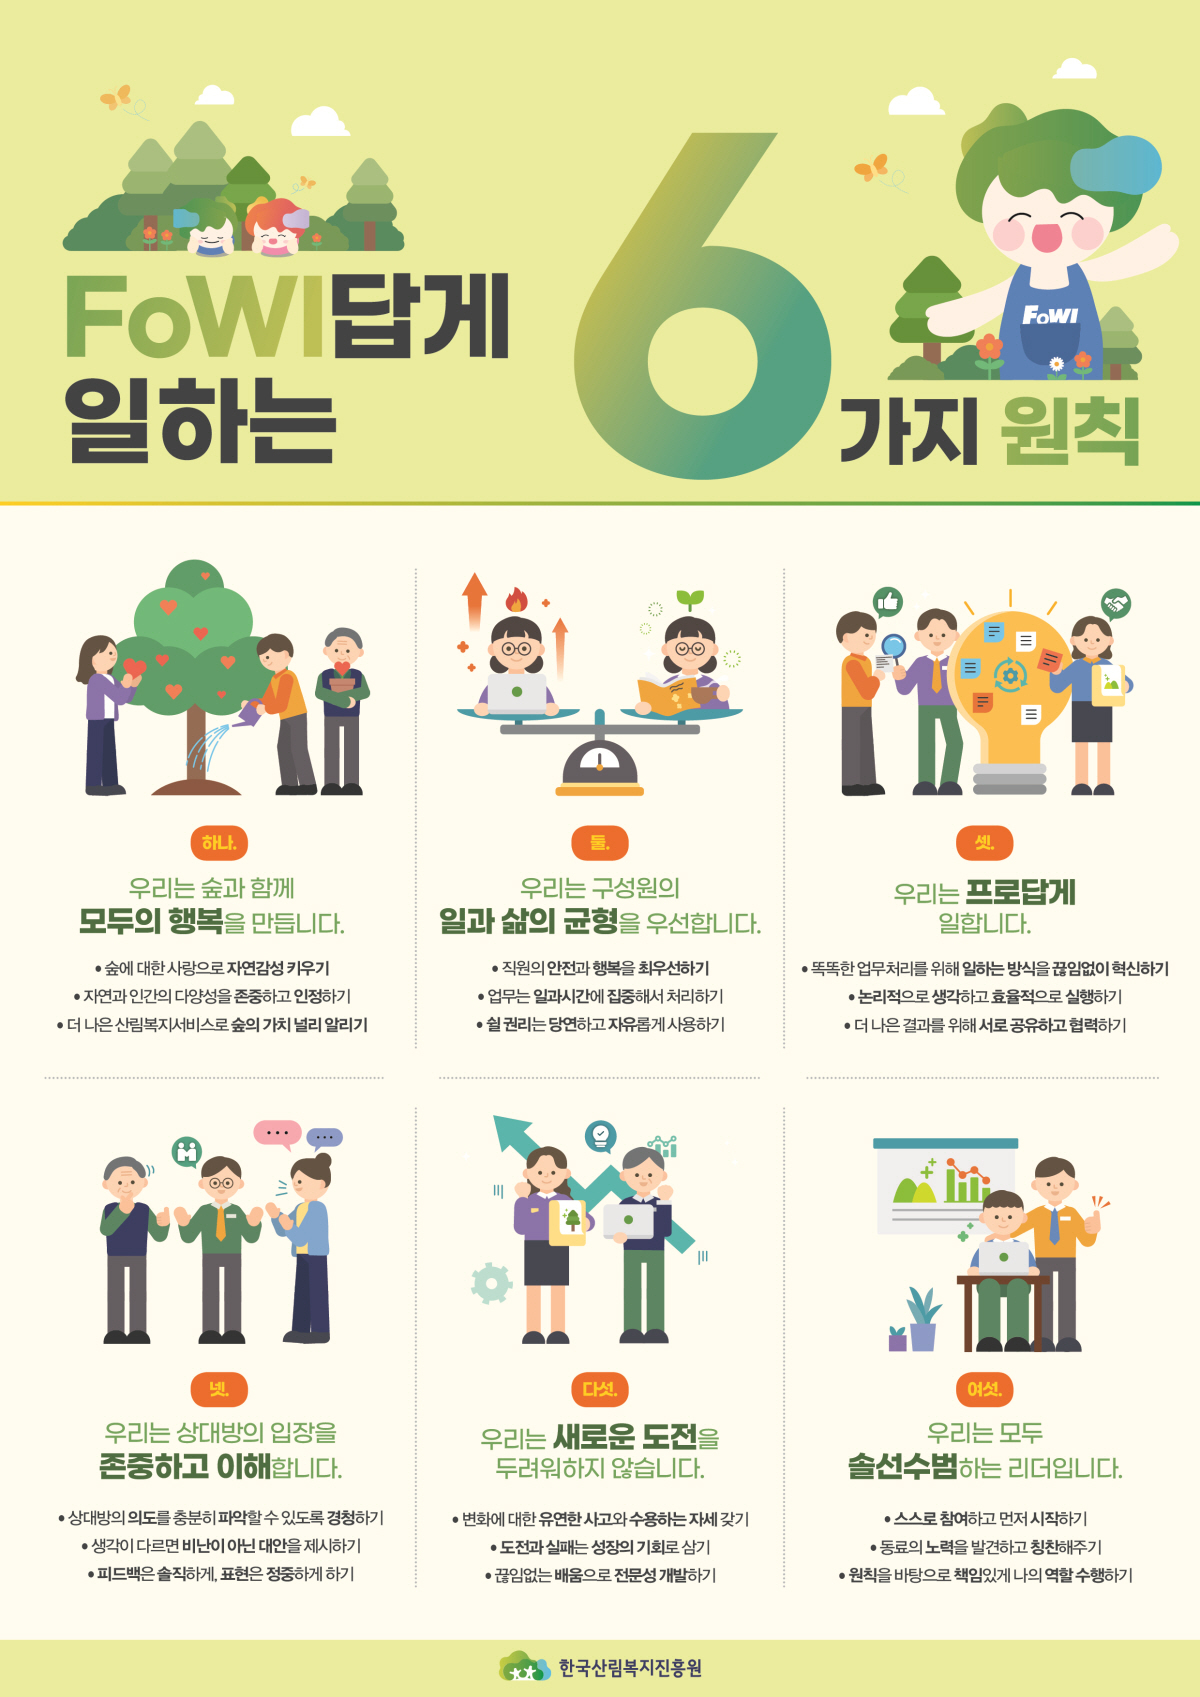 한국산림복지진흥원 FOWI가 일하는 6원칙